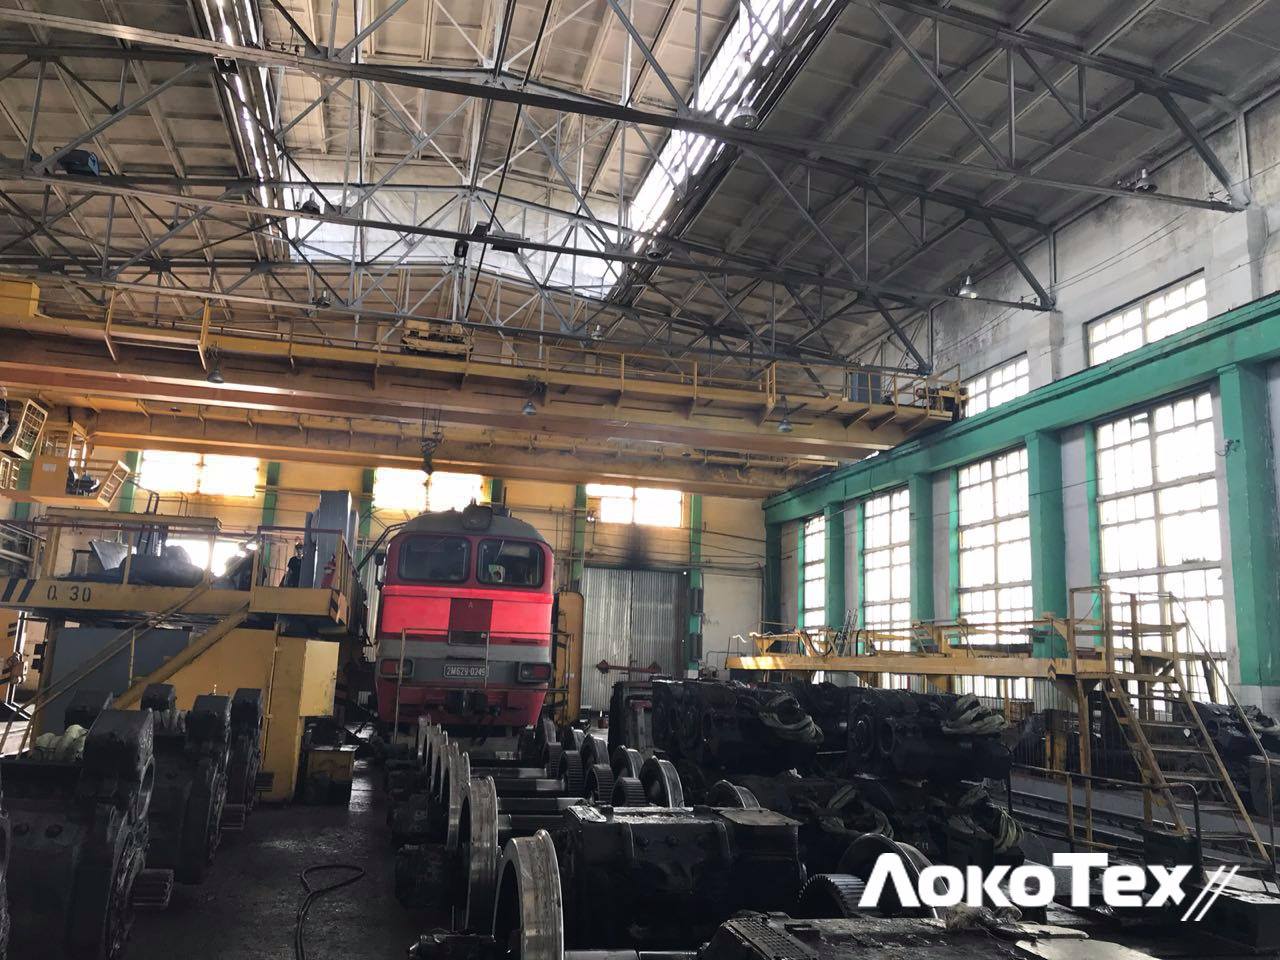 Сервисное локомотивное депо «Смоленск», что в Сортировке, — отмечает своё 150-летие